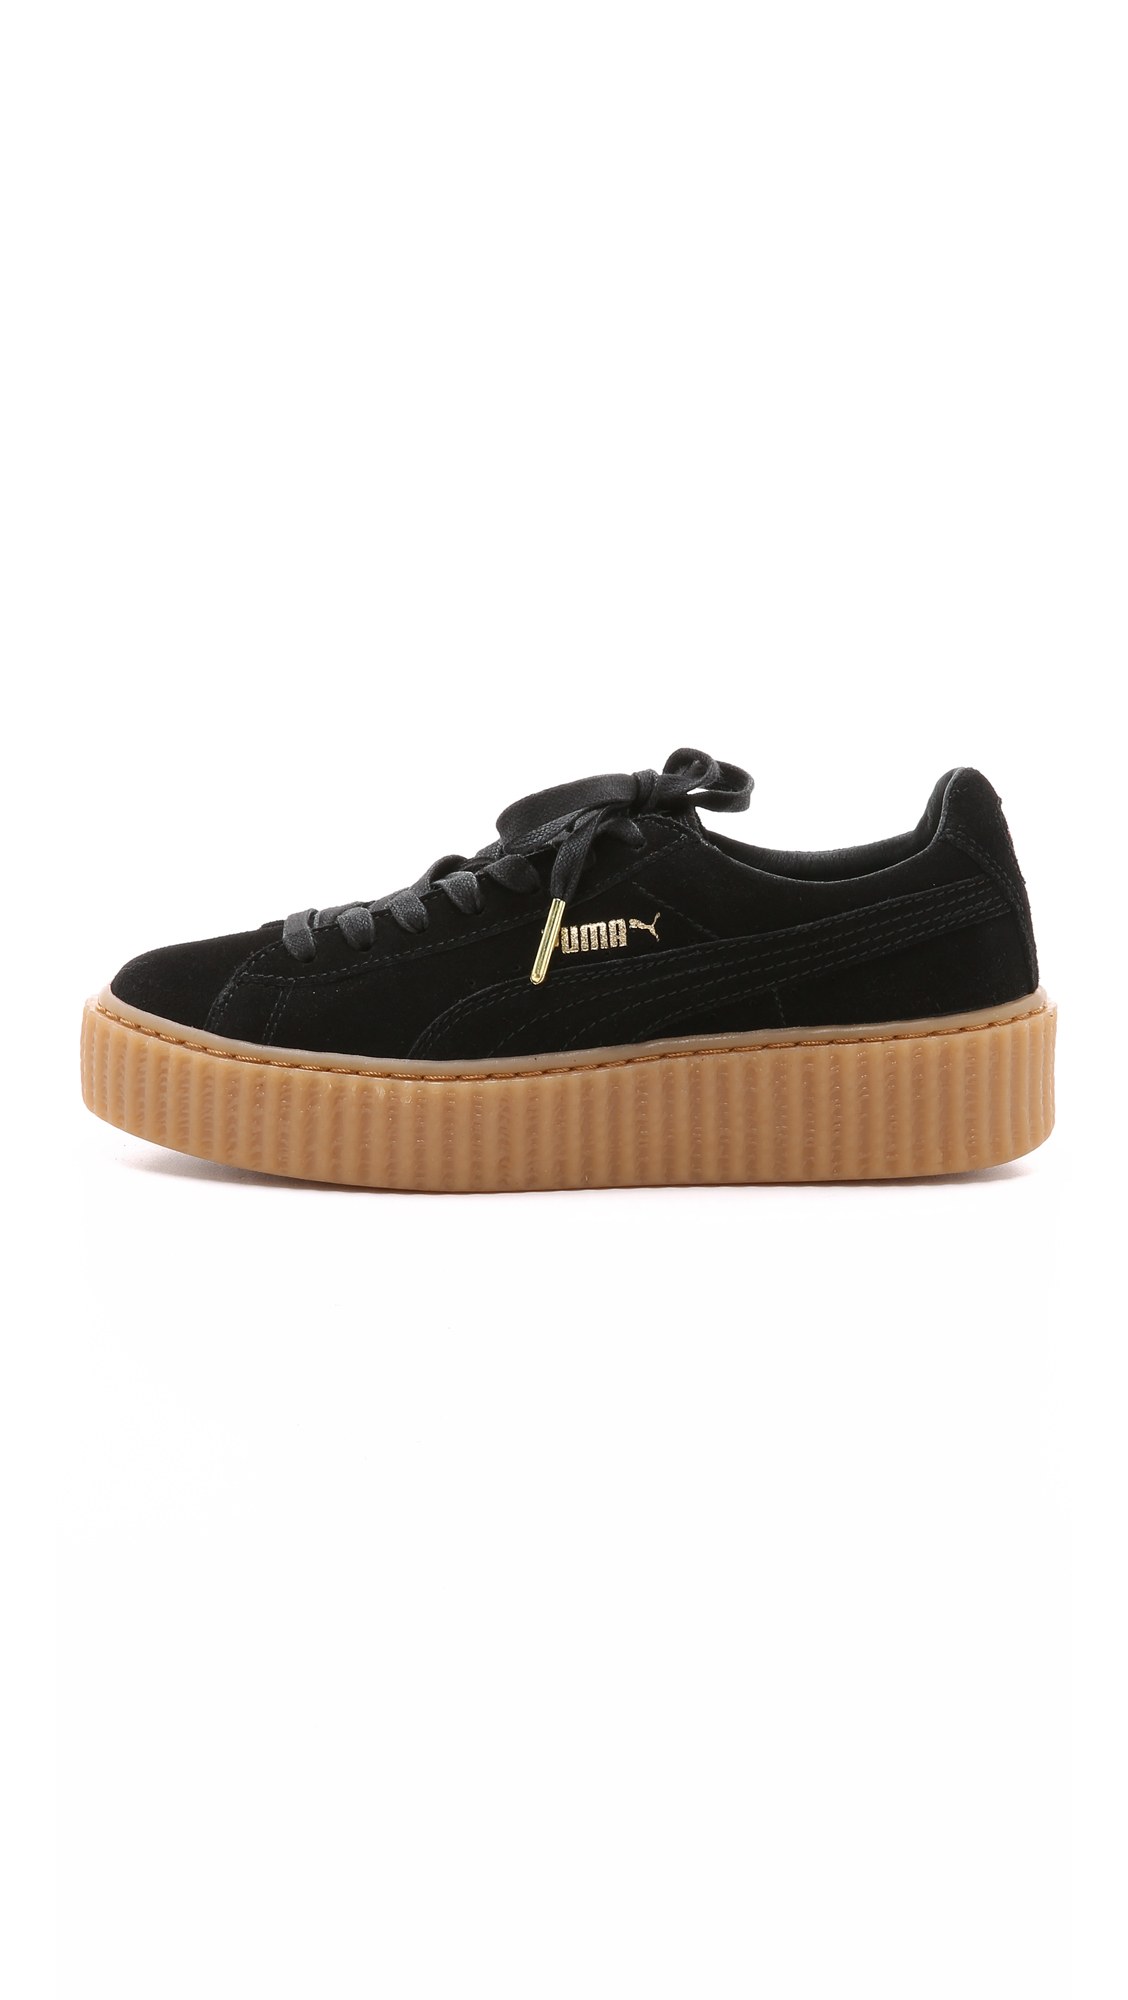 Rihanna Creeper Sneakers - Black/gum 